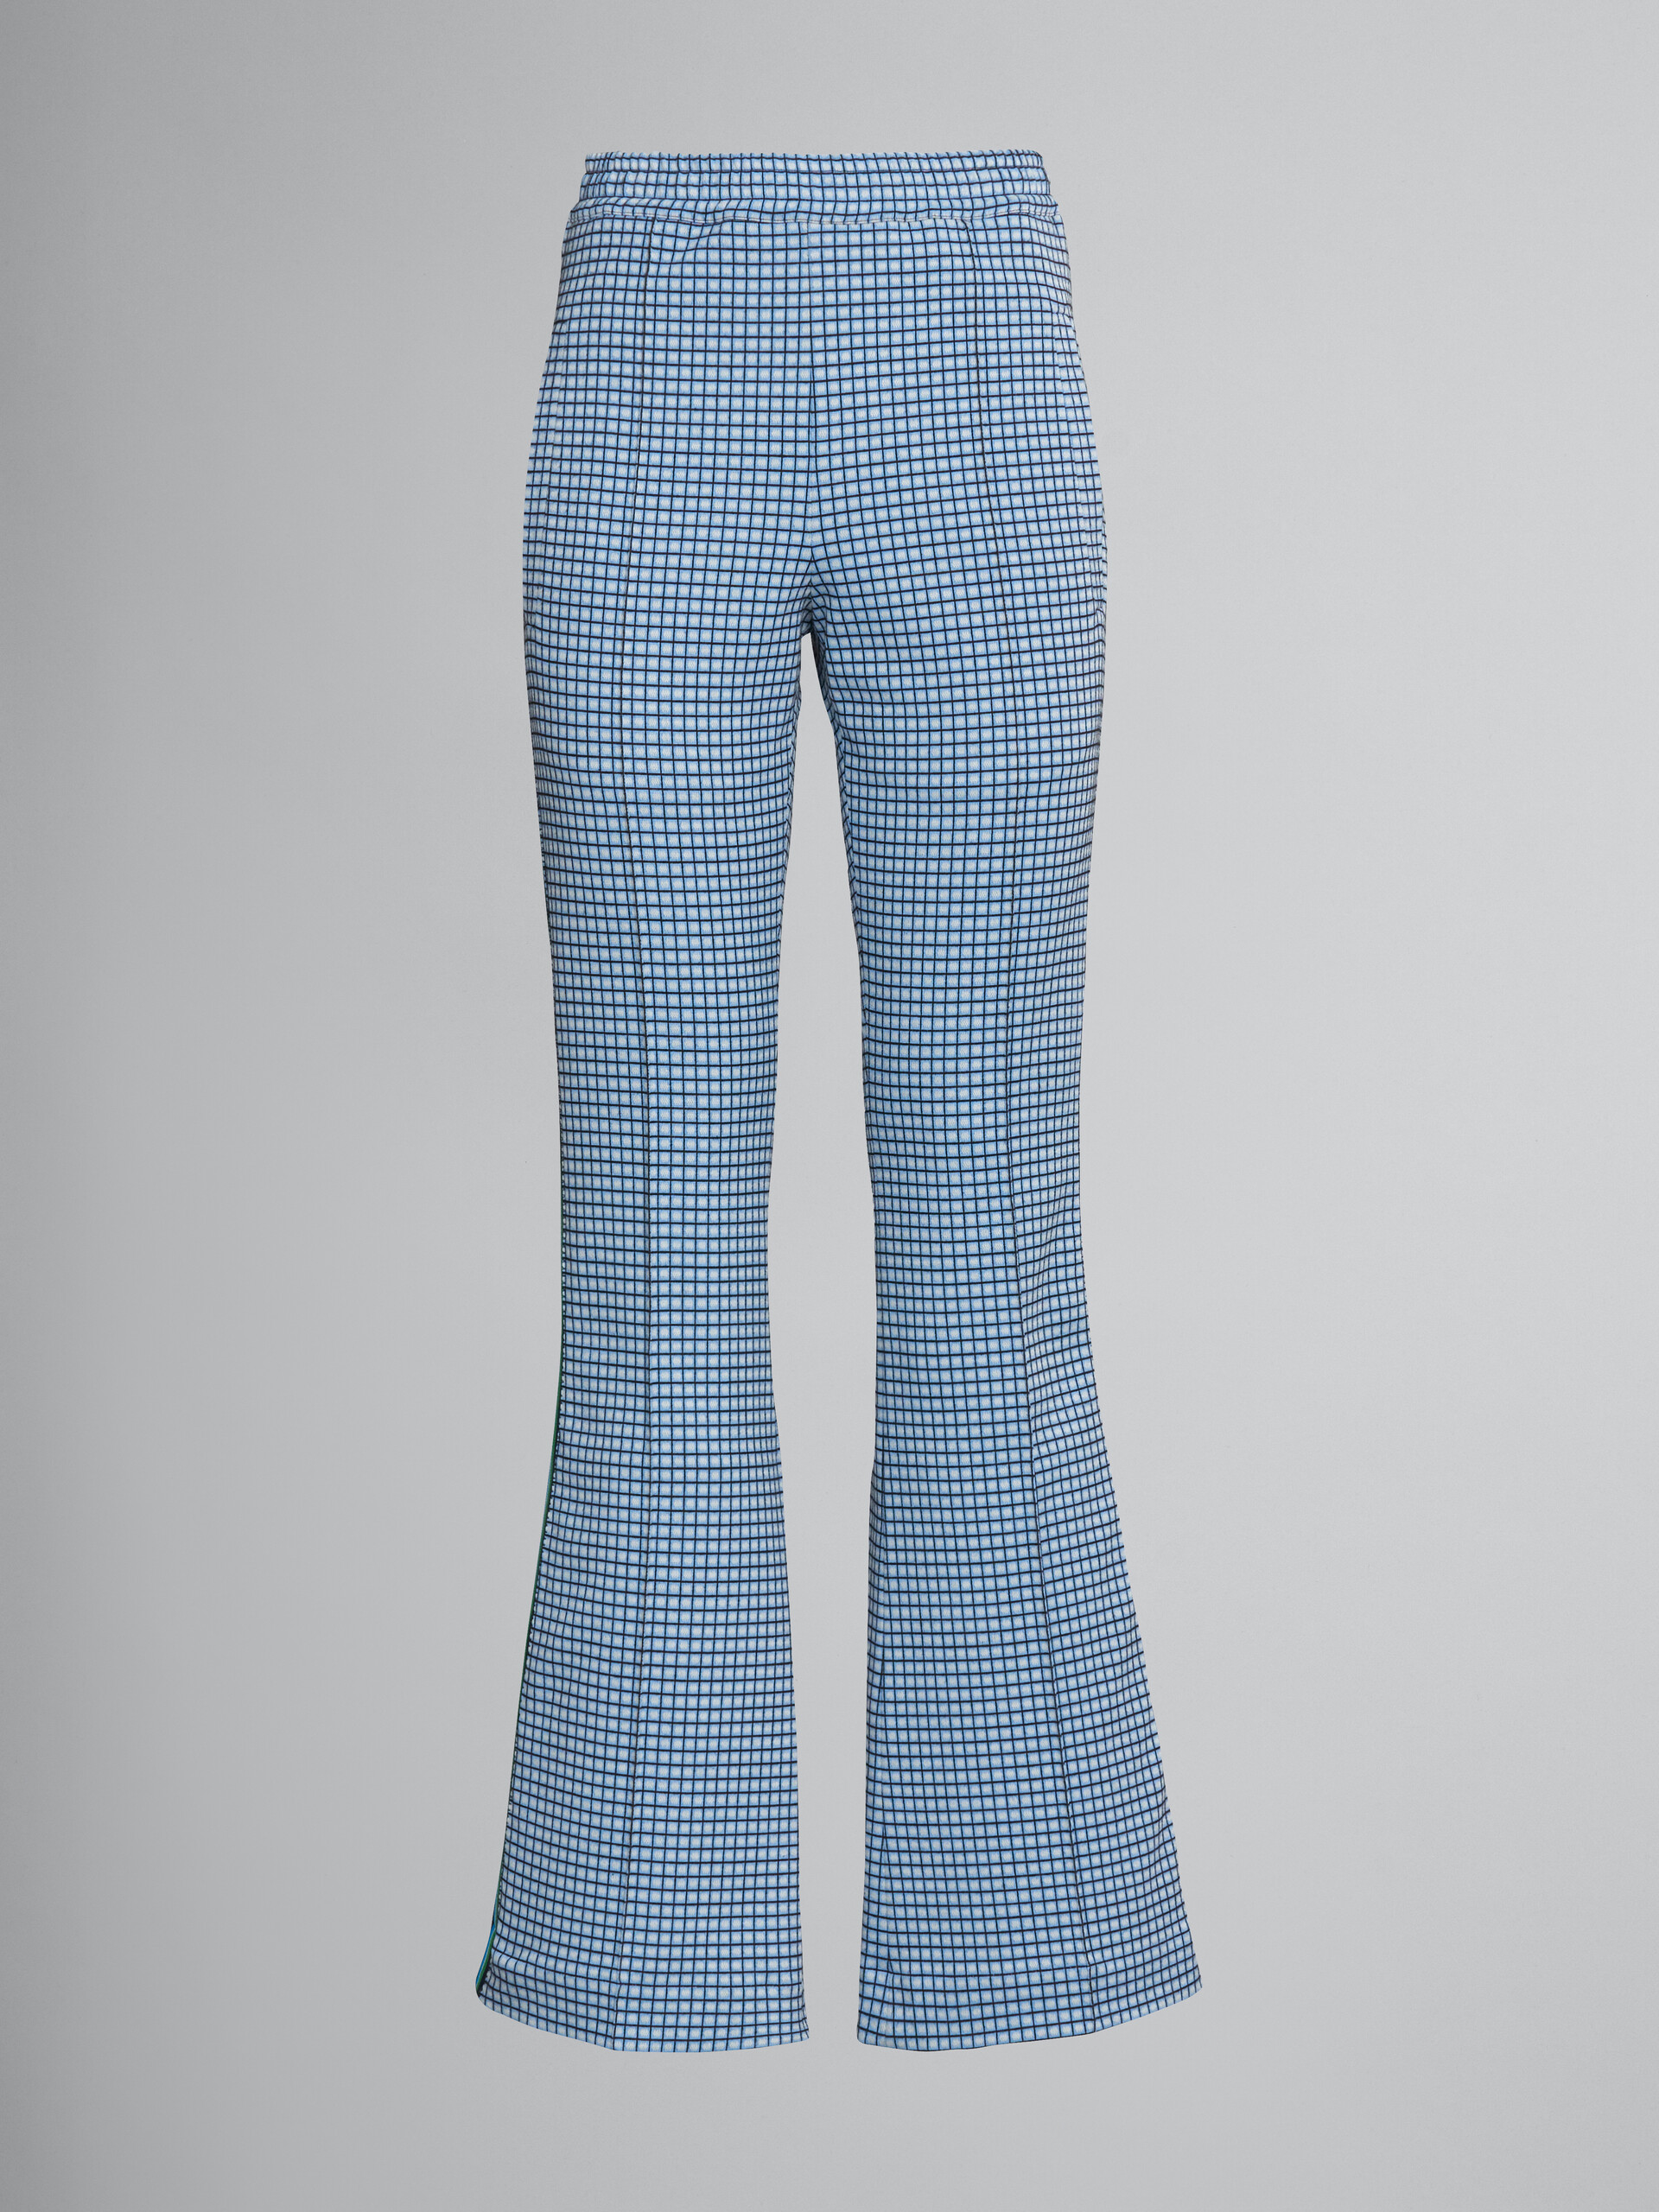 Pantaloni a zampa in jacquard azzurro - Pantaloni - Image 1